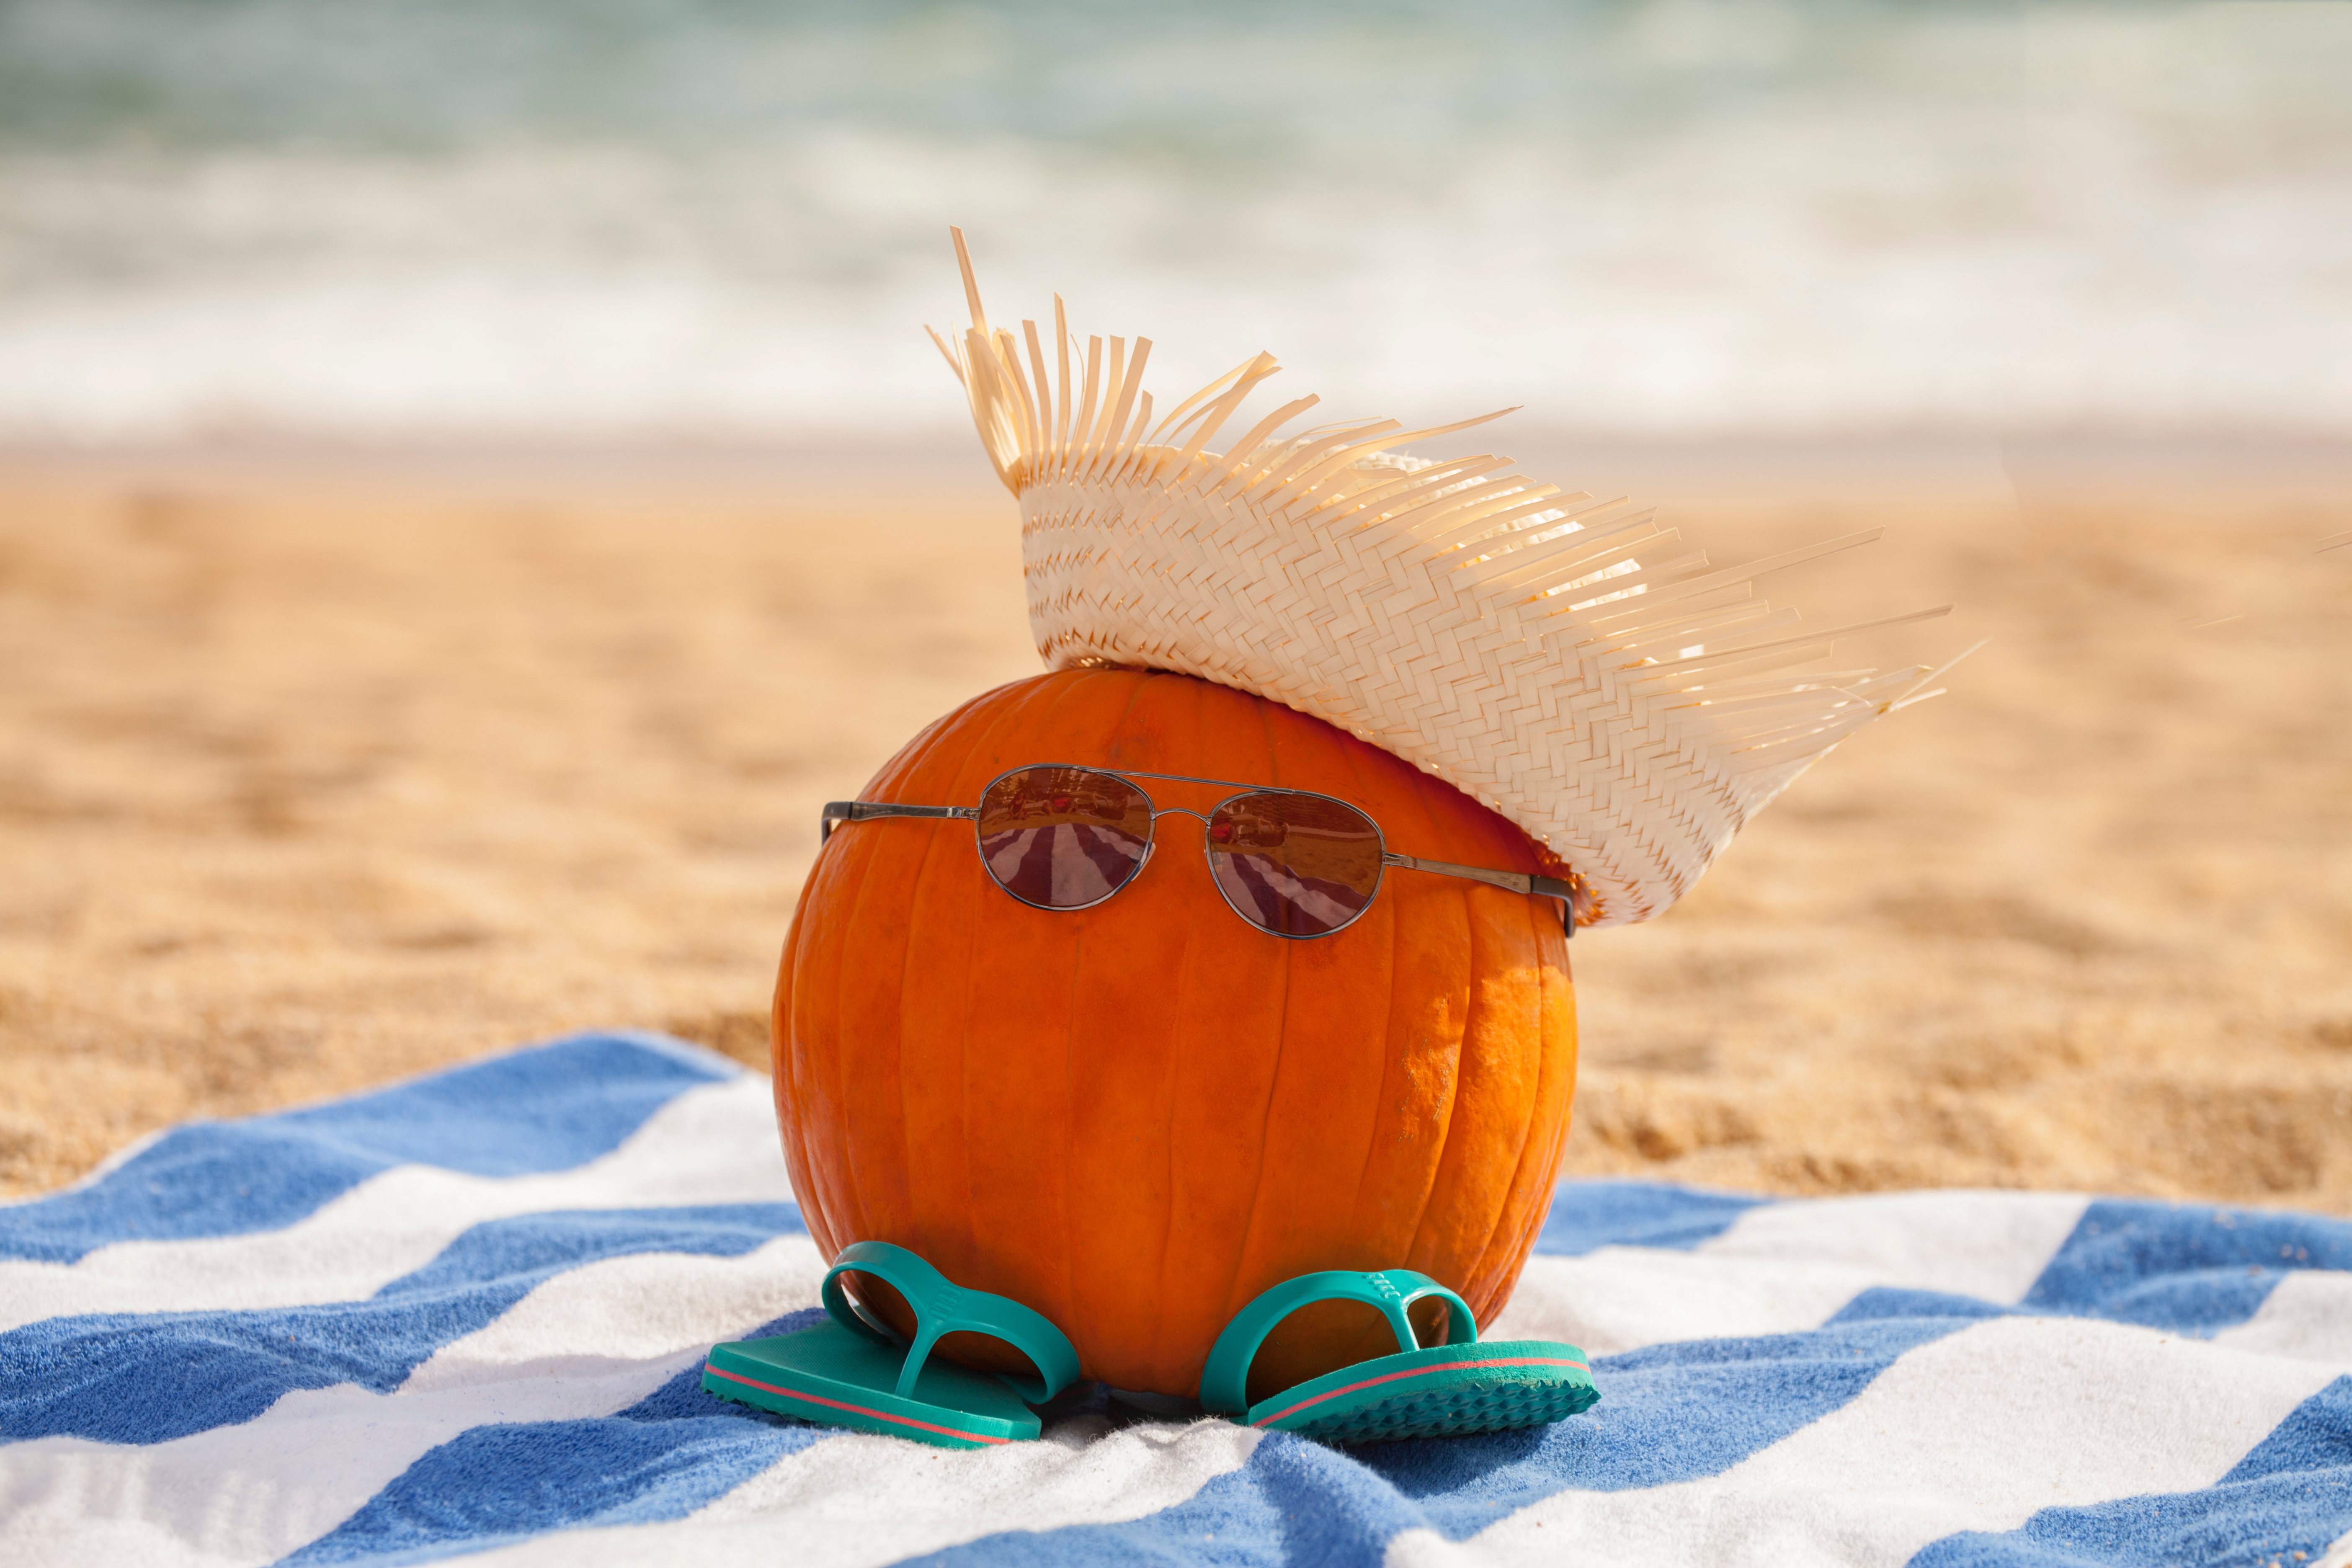 Beach Pumpkin